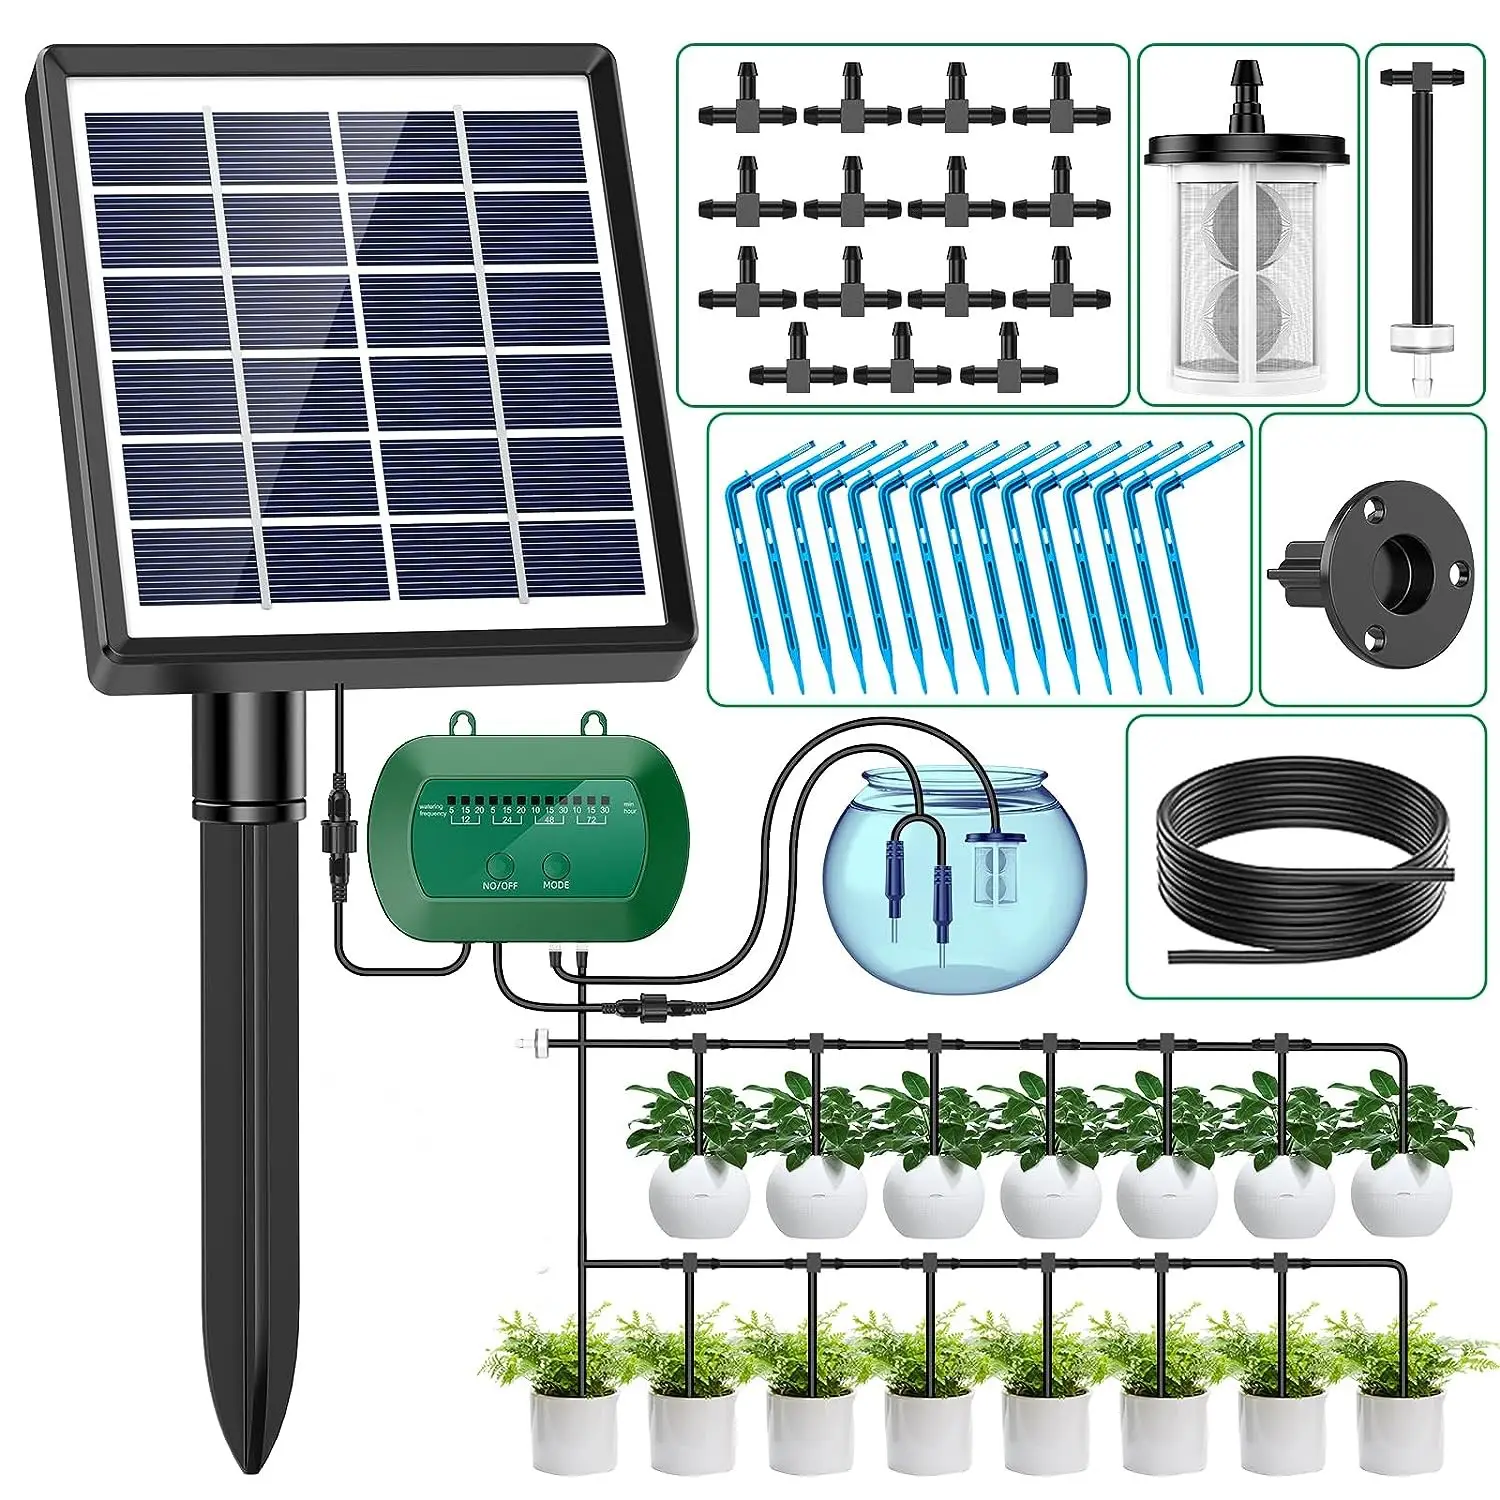 Solar bewässerungs system für Garten Tropf bewässerungs set für Topfpflanzen Unterstütztes automatisches Bewässerungs system Bewässerungs system